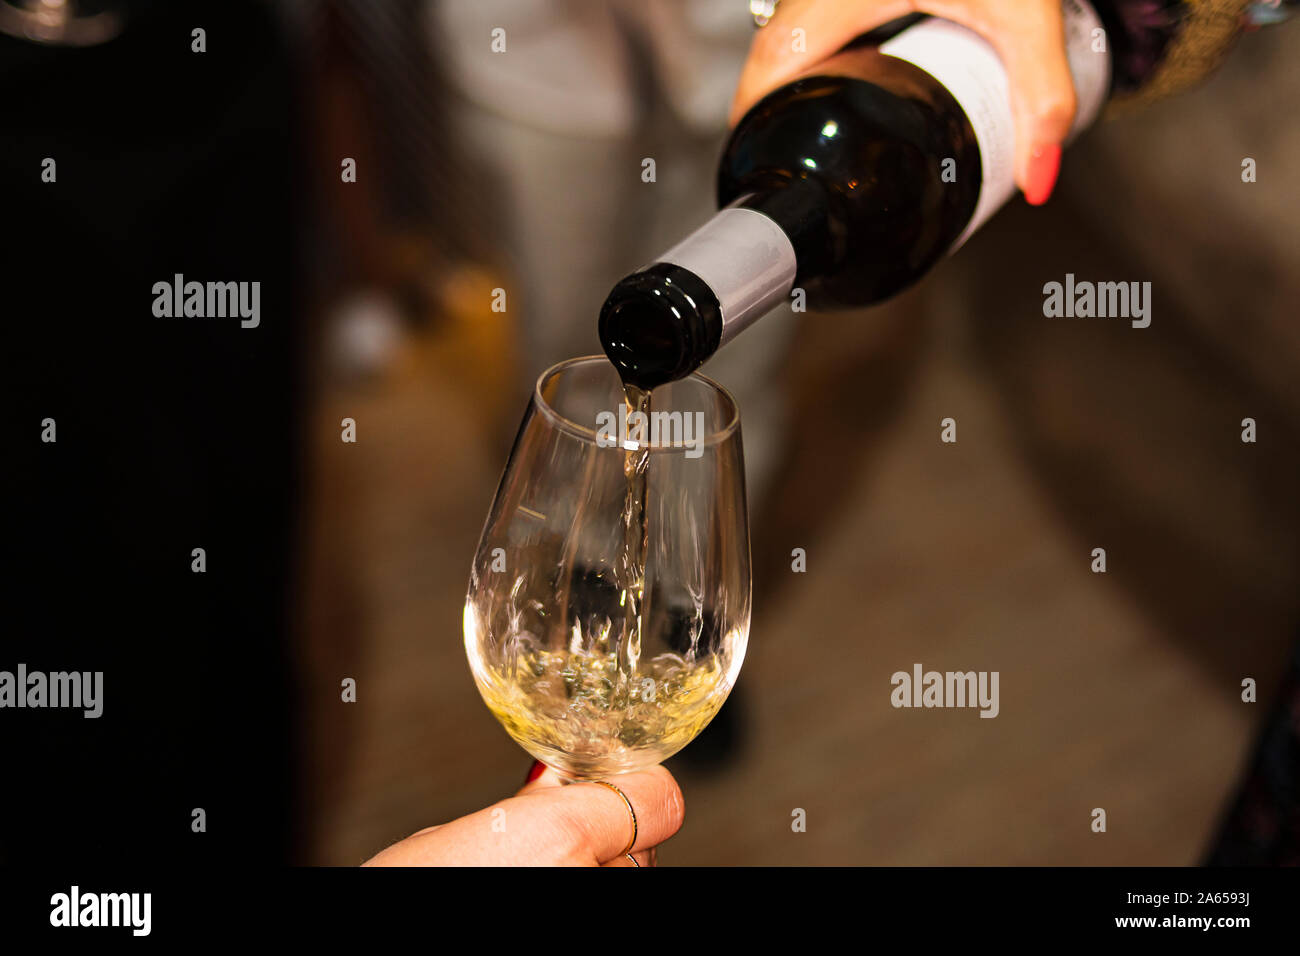 Persona che serve un bicchiere di vino nel bicchiere di vetro in una cantina scuro Foto Stock